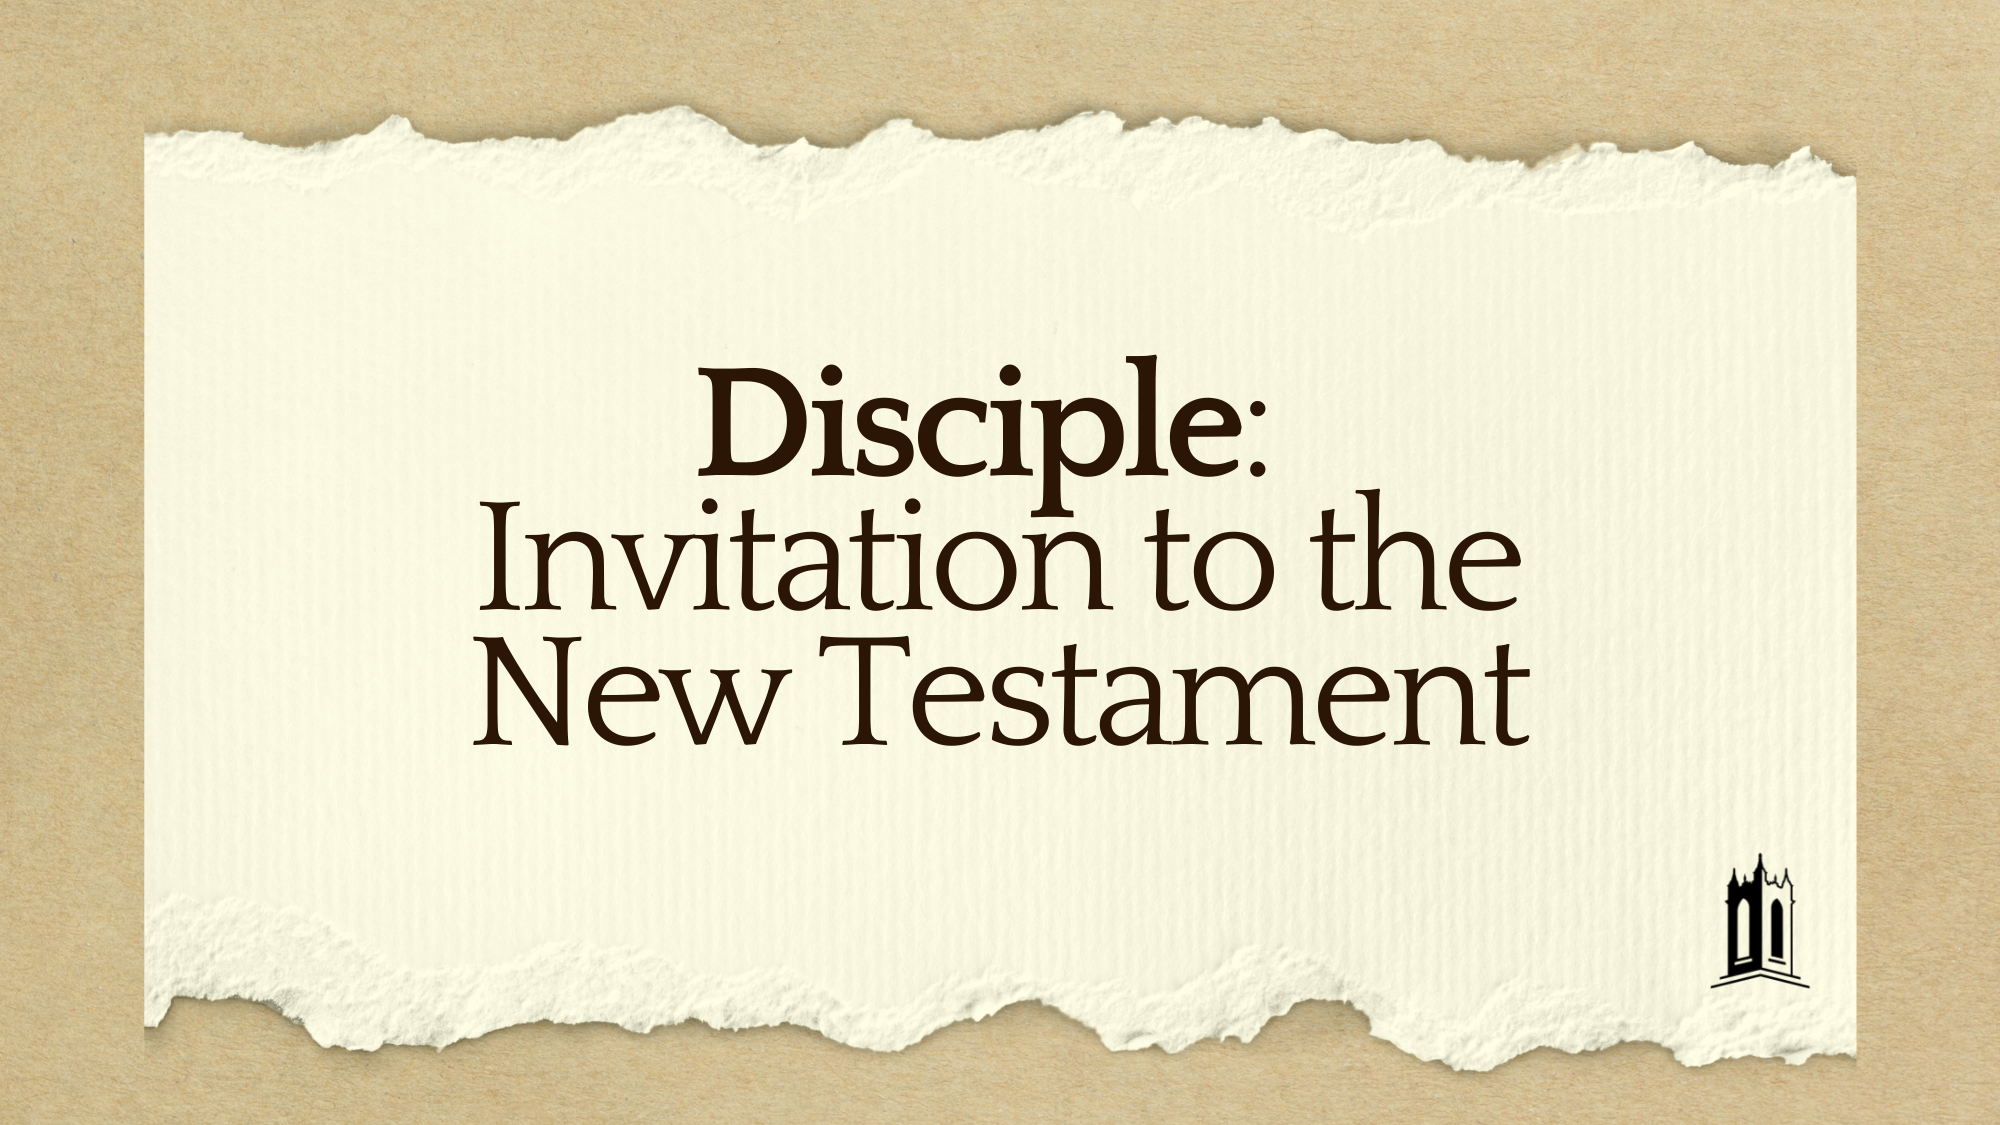 Disciple: Invitation to the New Testament